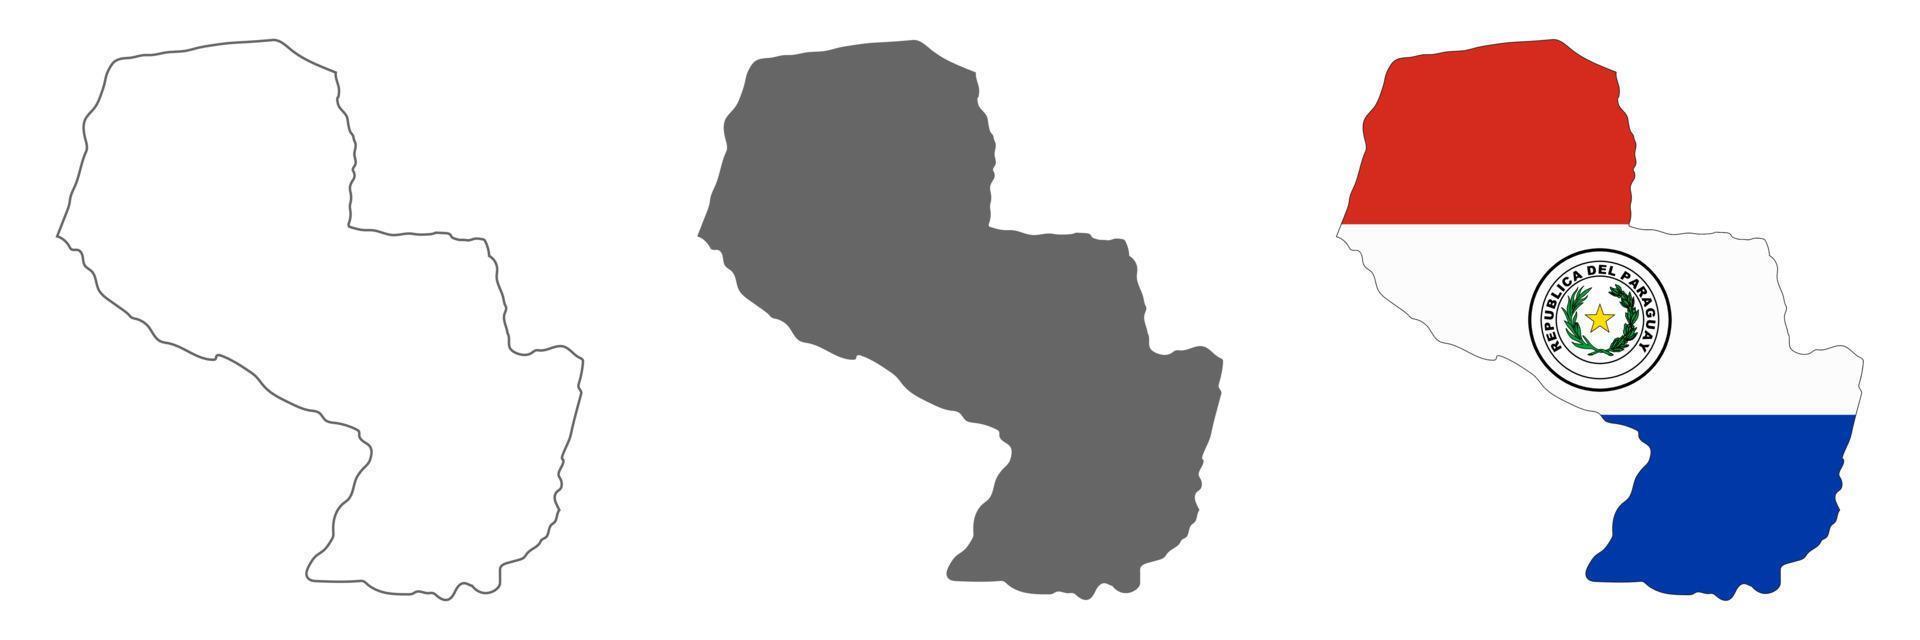 zeer gedetailleerde paraguay-kaart met randen geïsoleerd op de achtergrond vector